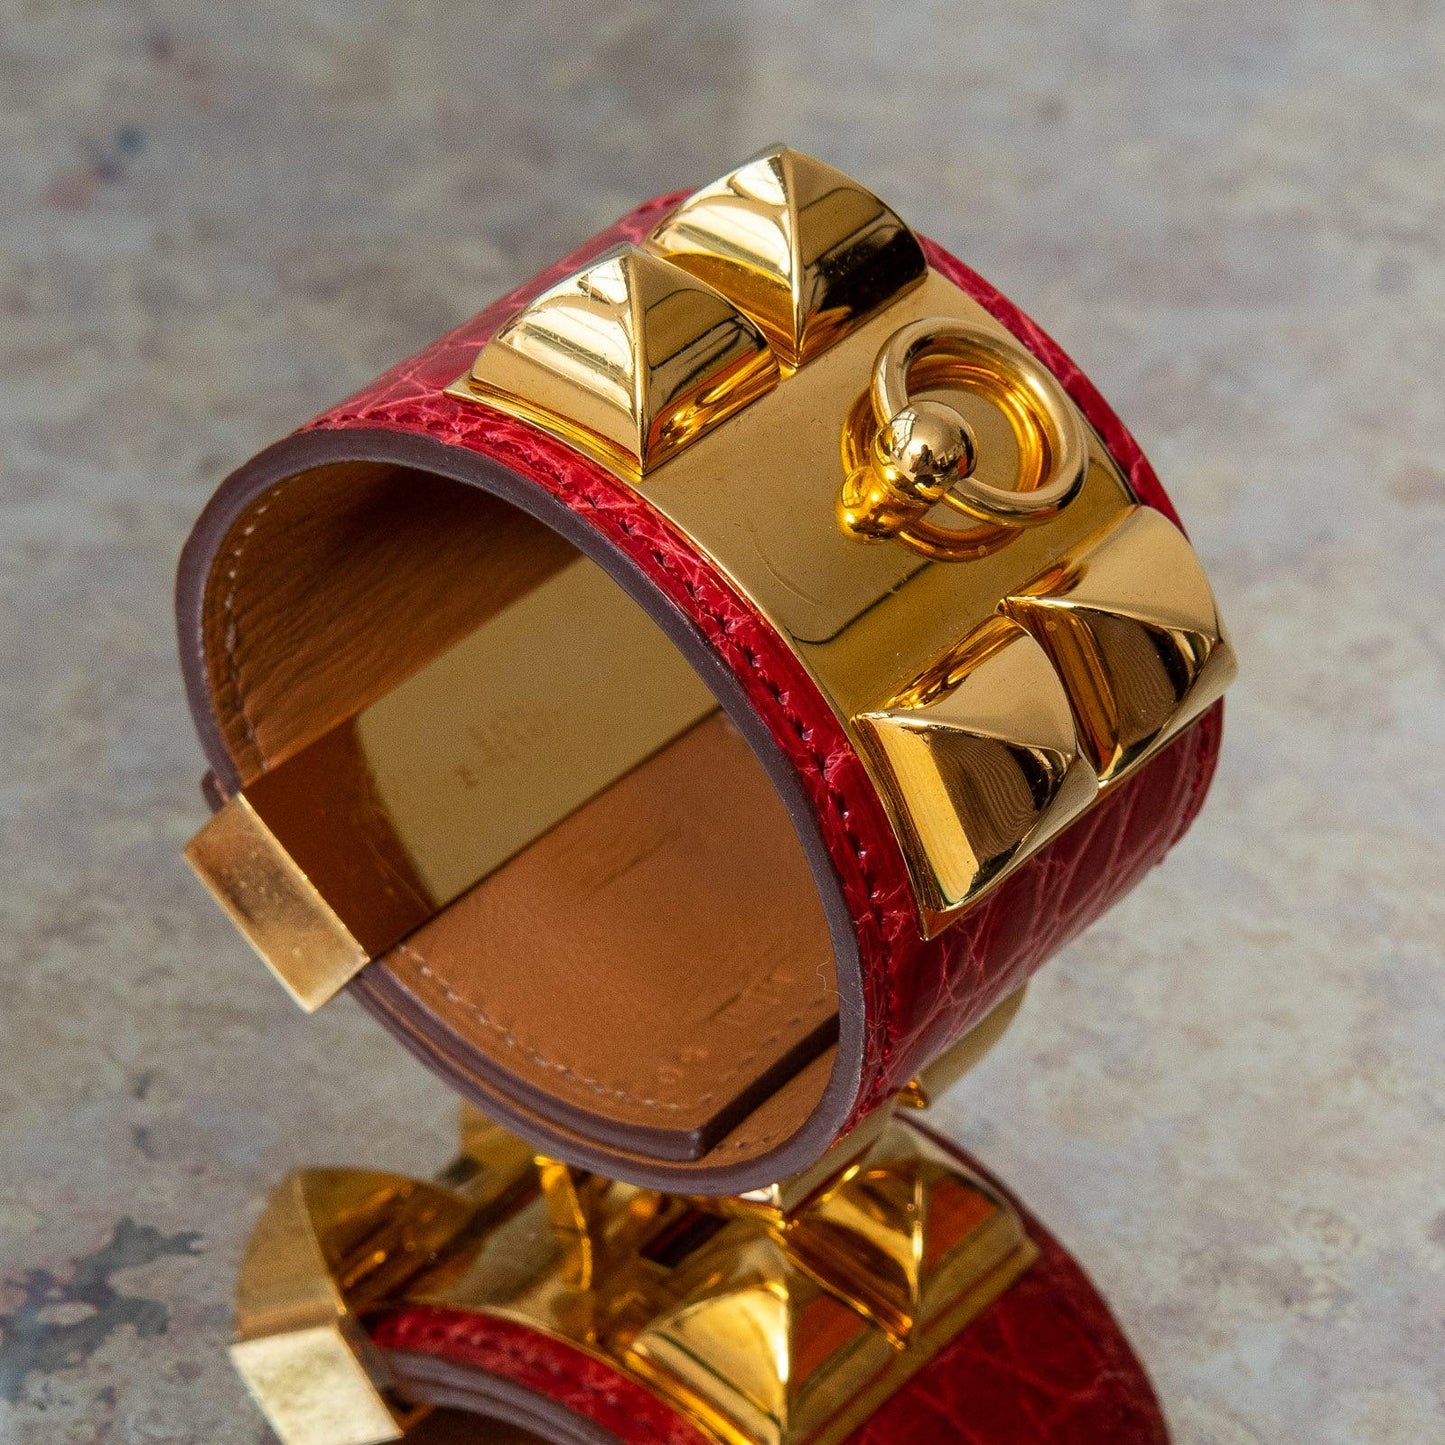 Hermes 18K Rose Gold Collier de Chien CDC Bangle St Bracelet Cuff